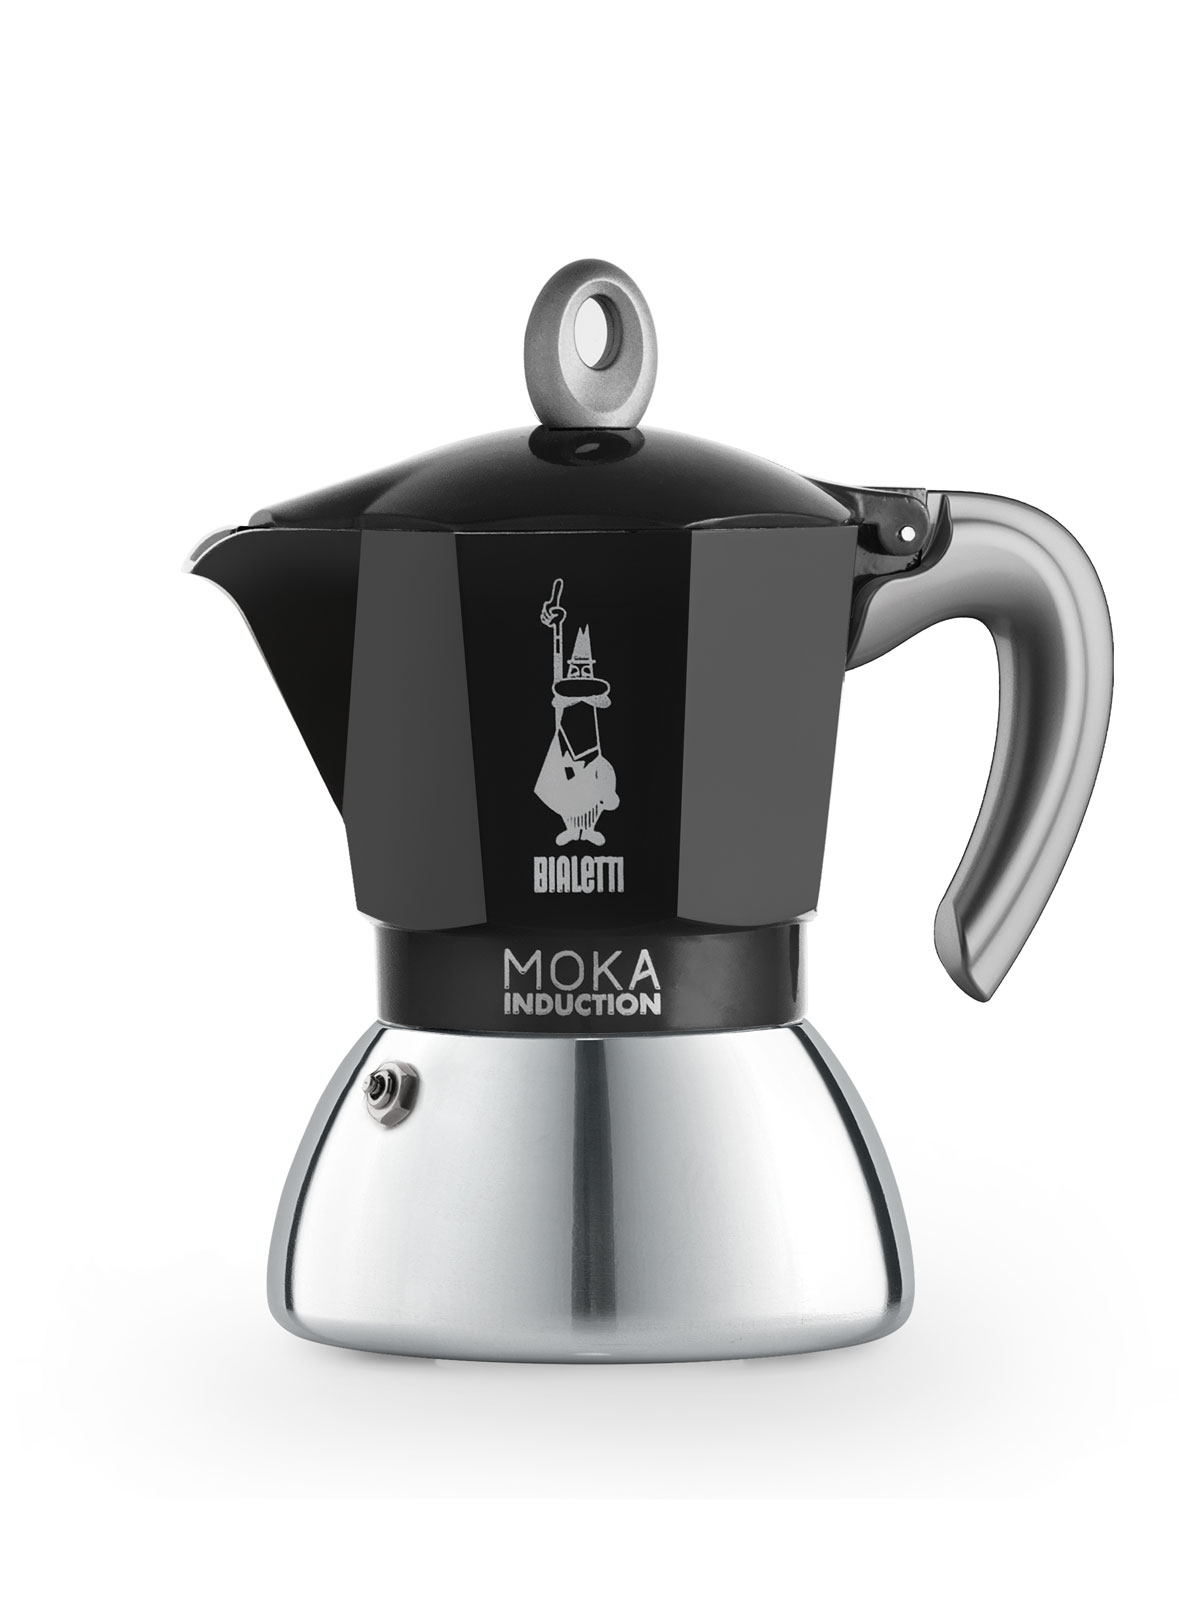 Bialetti Italien New Moka Induktion Espressokocher Black 4 Tassen